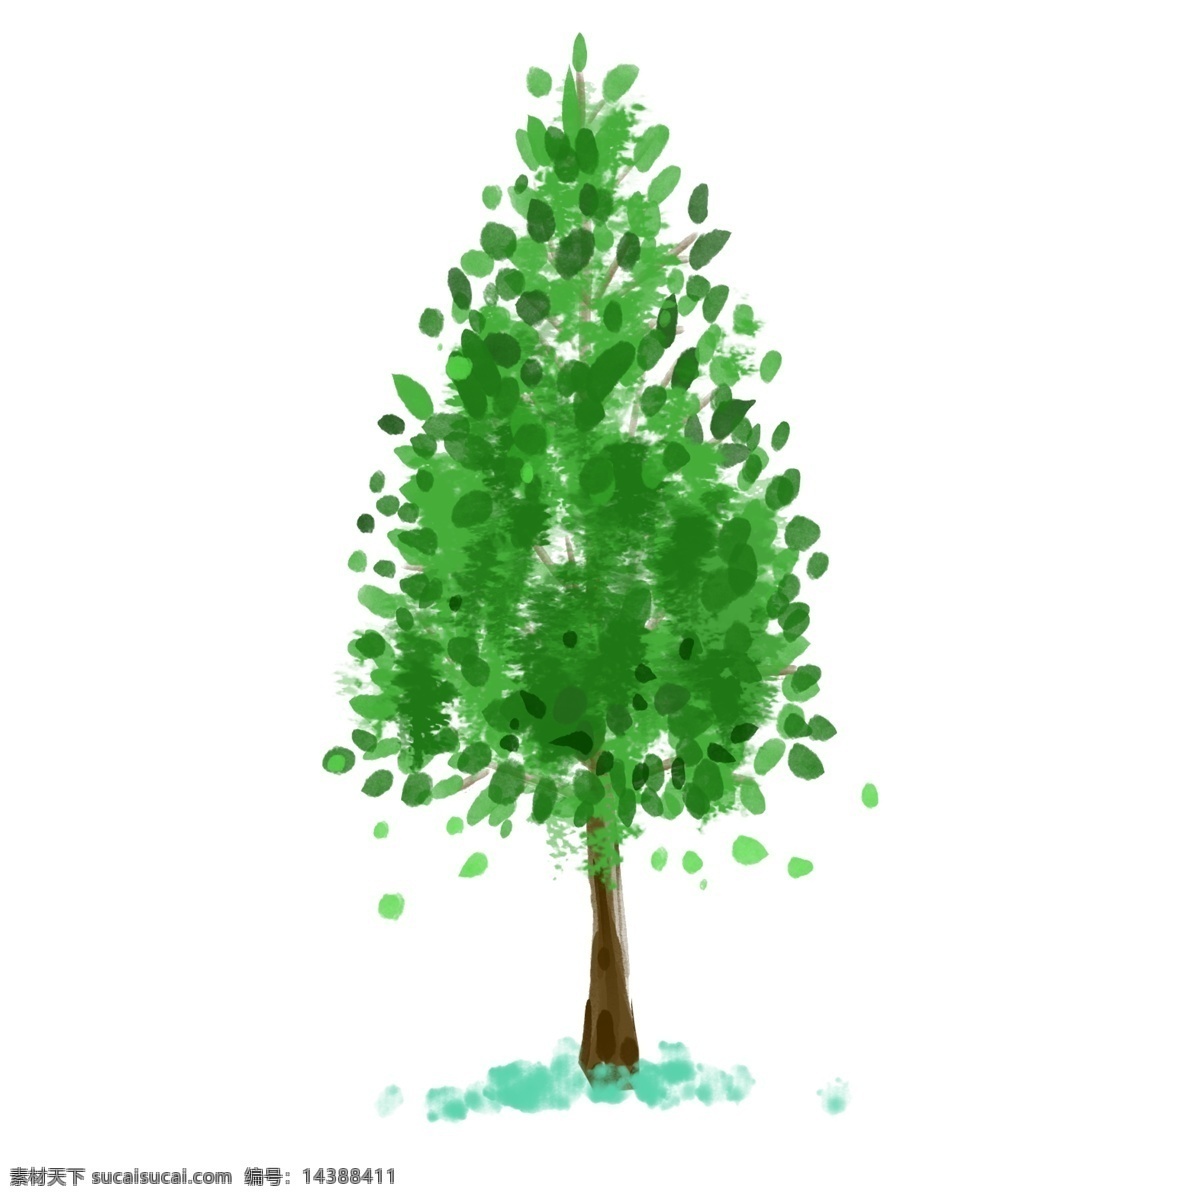 环艺 水彩 绿色 树 植物 树木 枝条